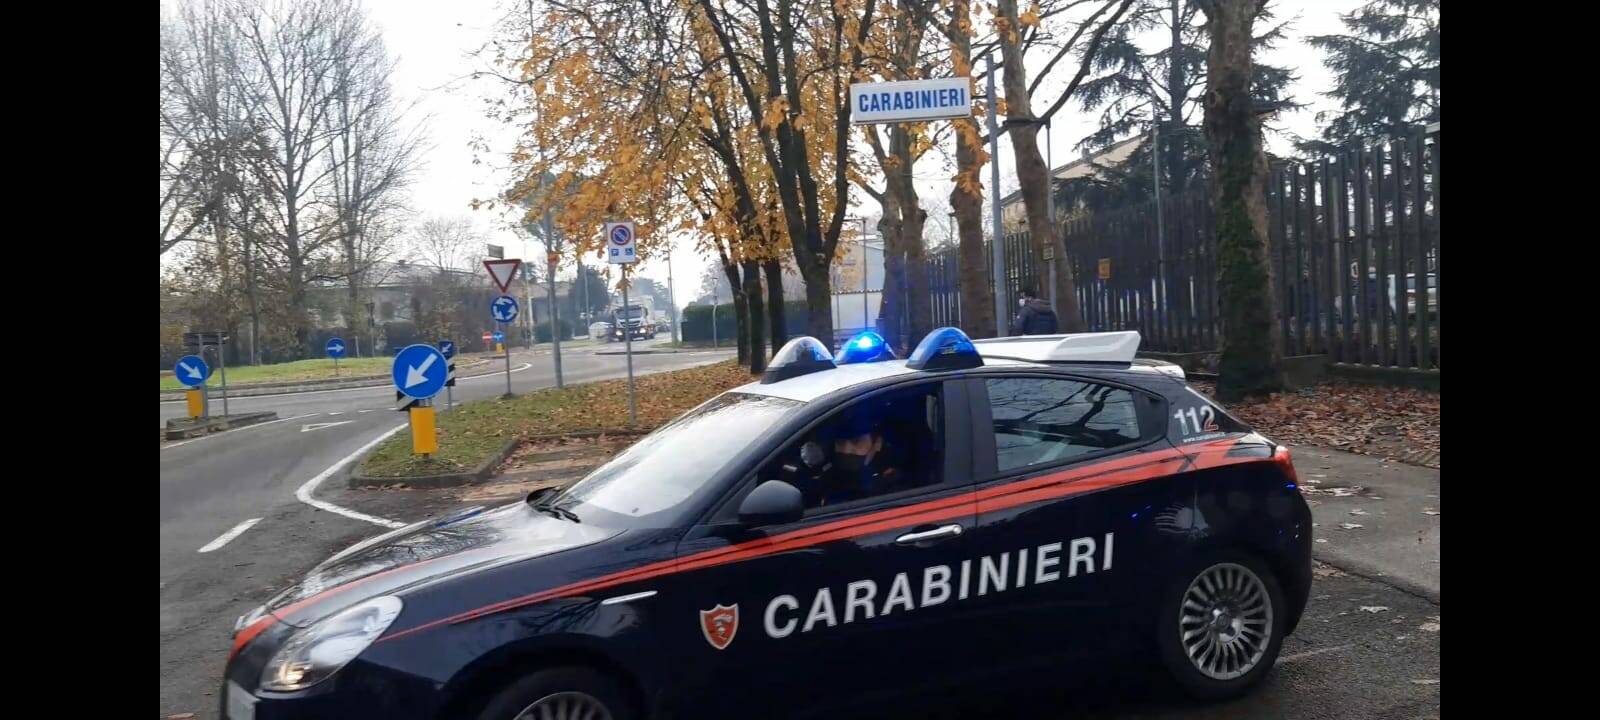 Gattatico, i carabinieri ritrovano le armi rubate poco prima